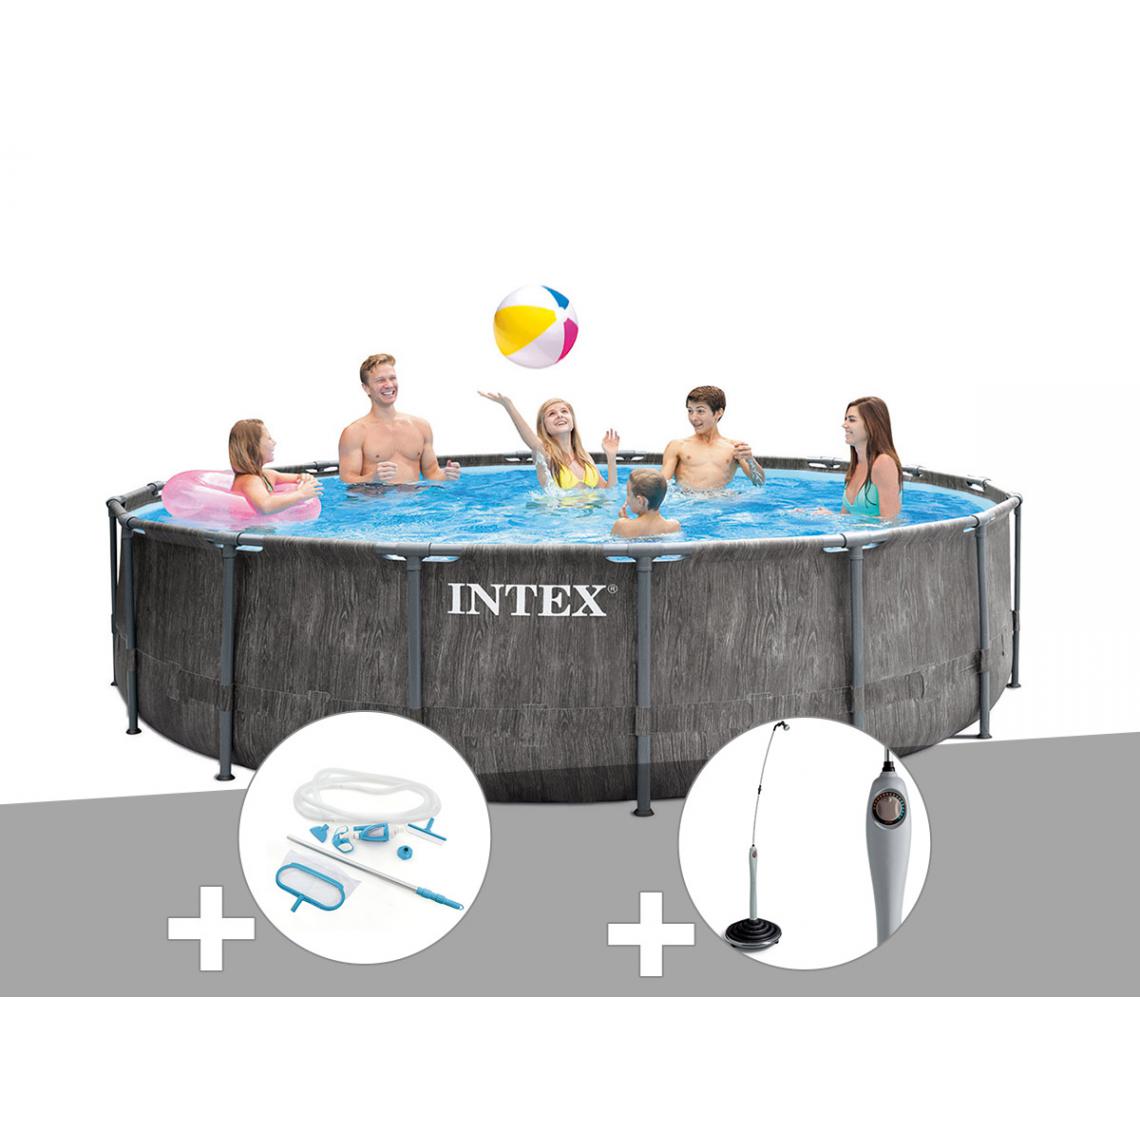 Intex - Kit piscine tubulaire Intex Baltik ronde 5,49 x 1,22 m + Kit d'entretien + Douche solaire - Piscine Tubulaire